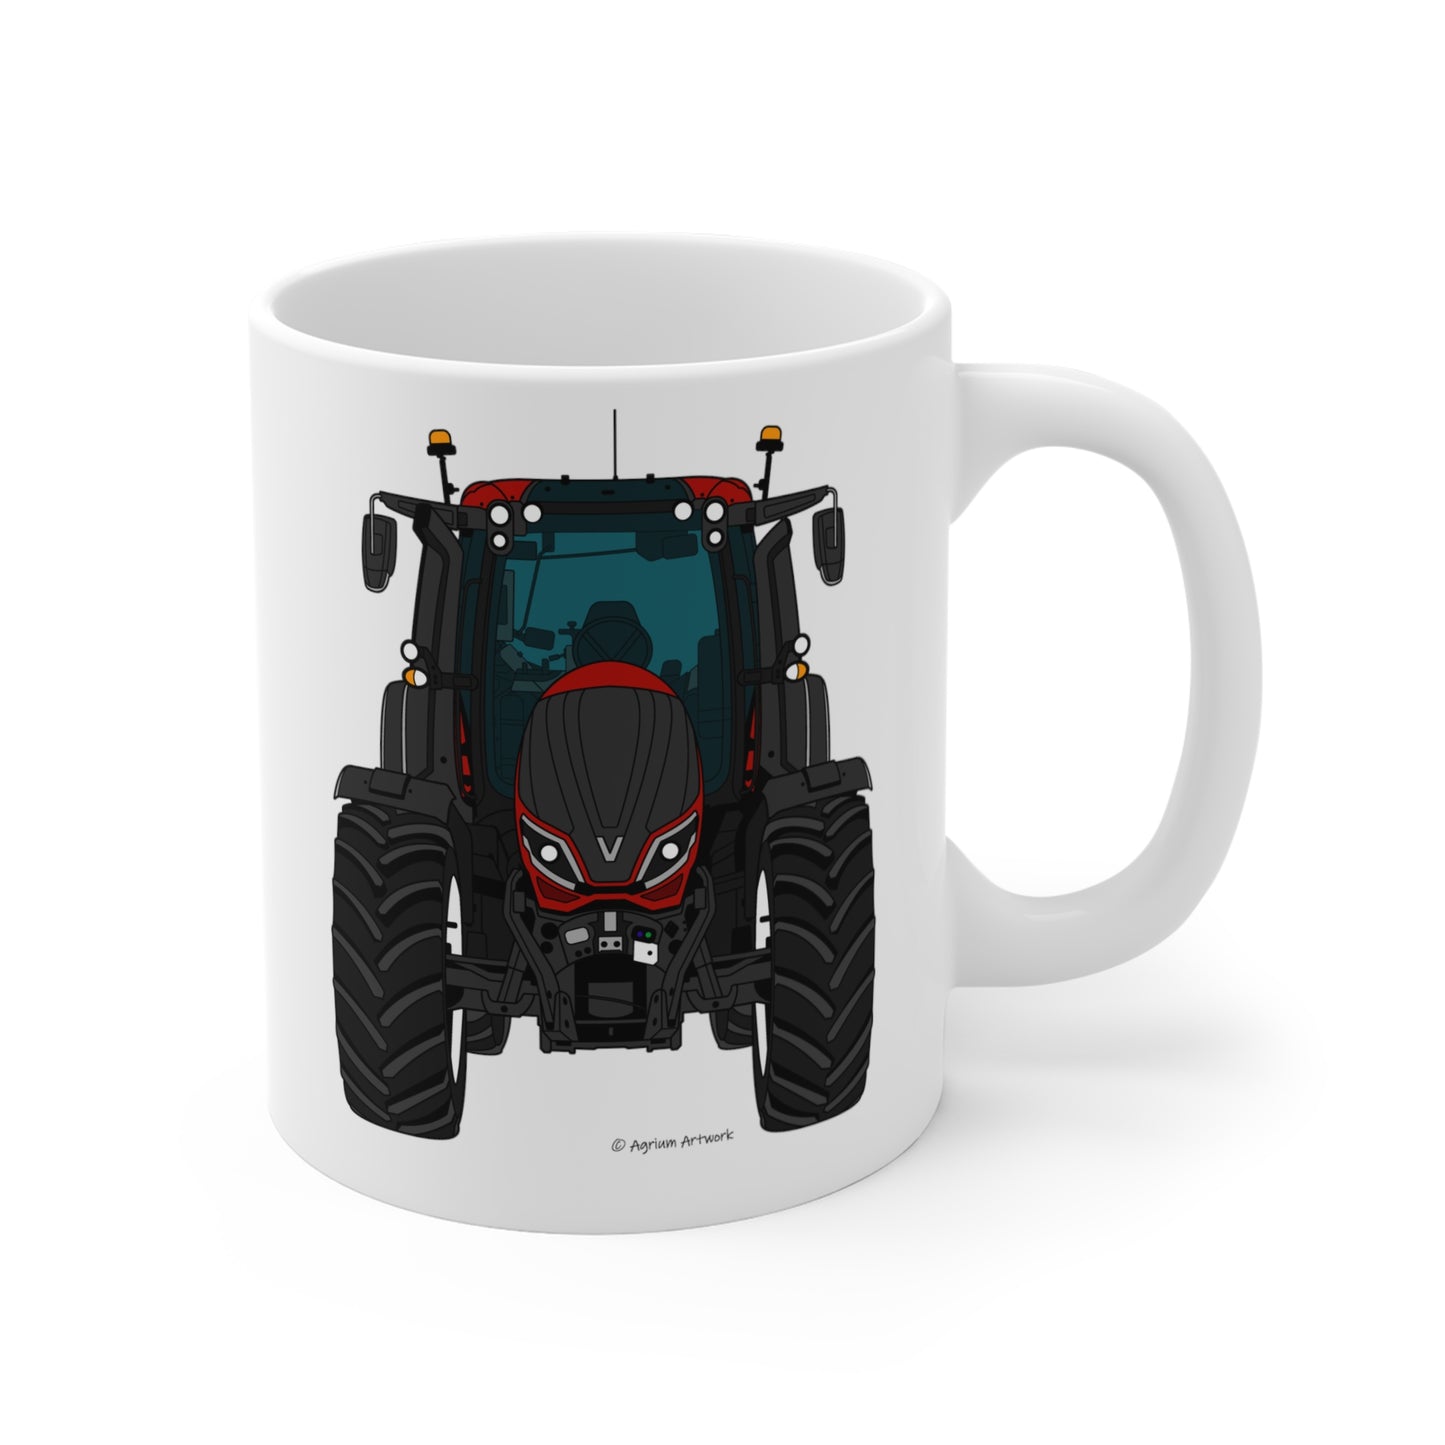 Maroon Tractor Mug 11oz